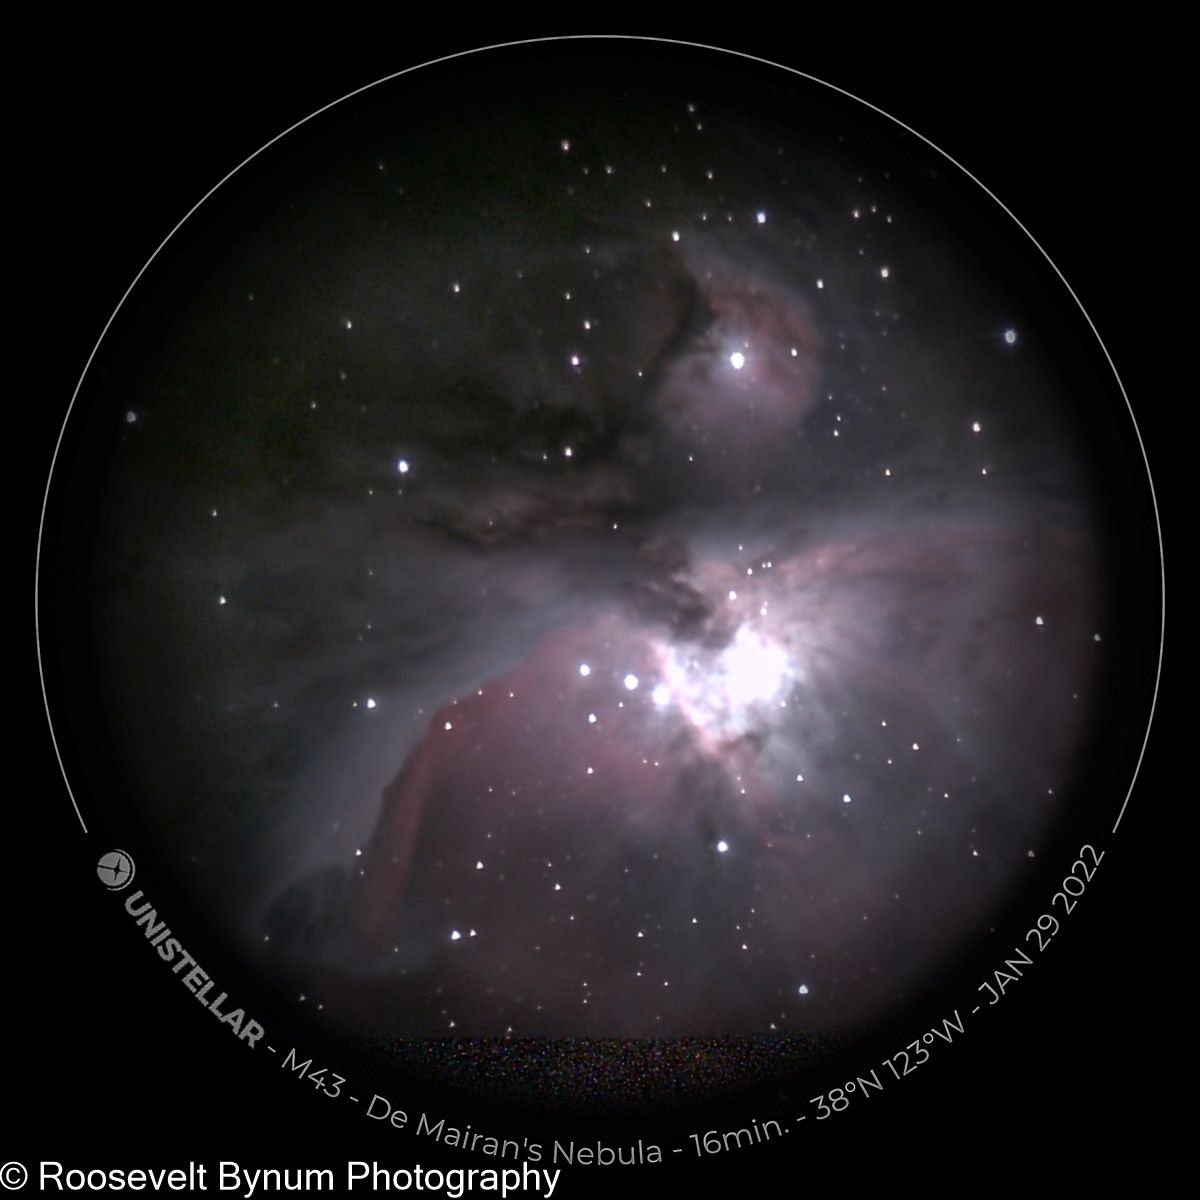 M43 - De Mairan's Nebula